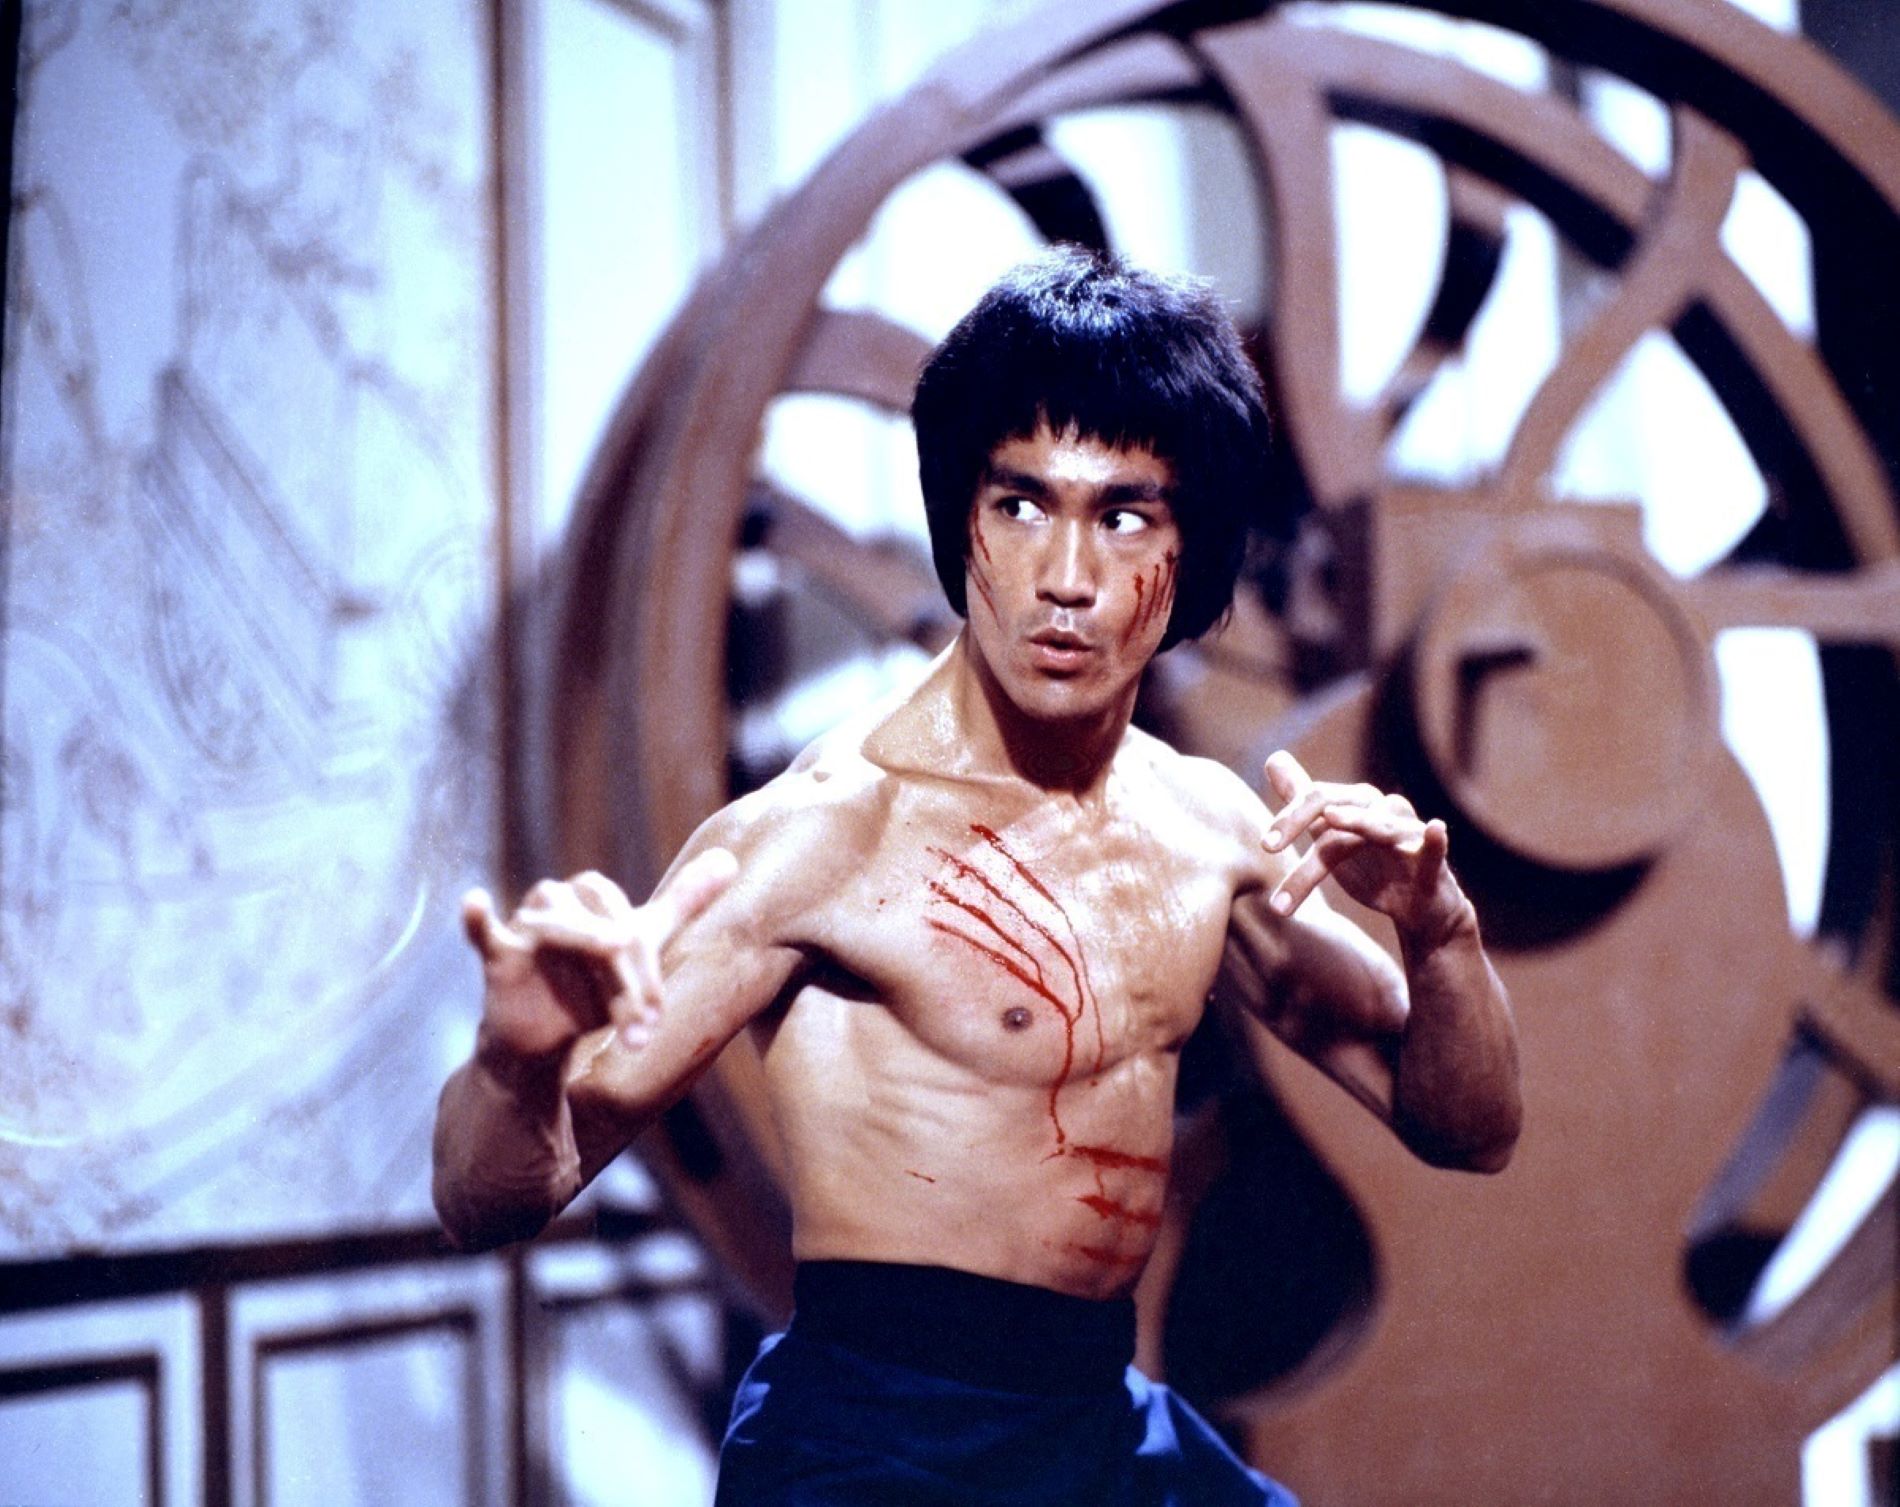 Bruce Lee murió por beber demasiada agua, según una nueva teoría